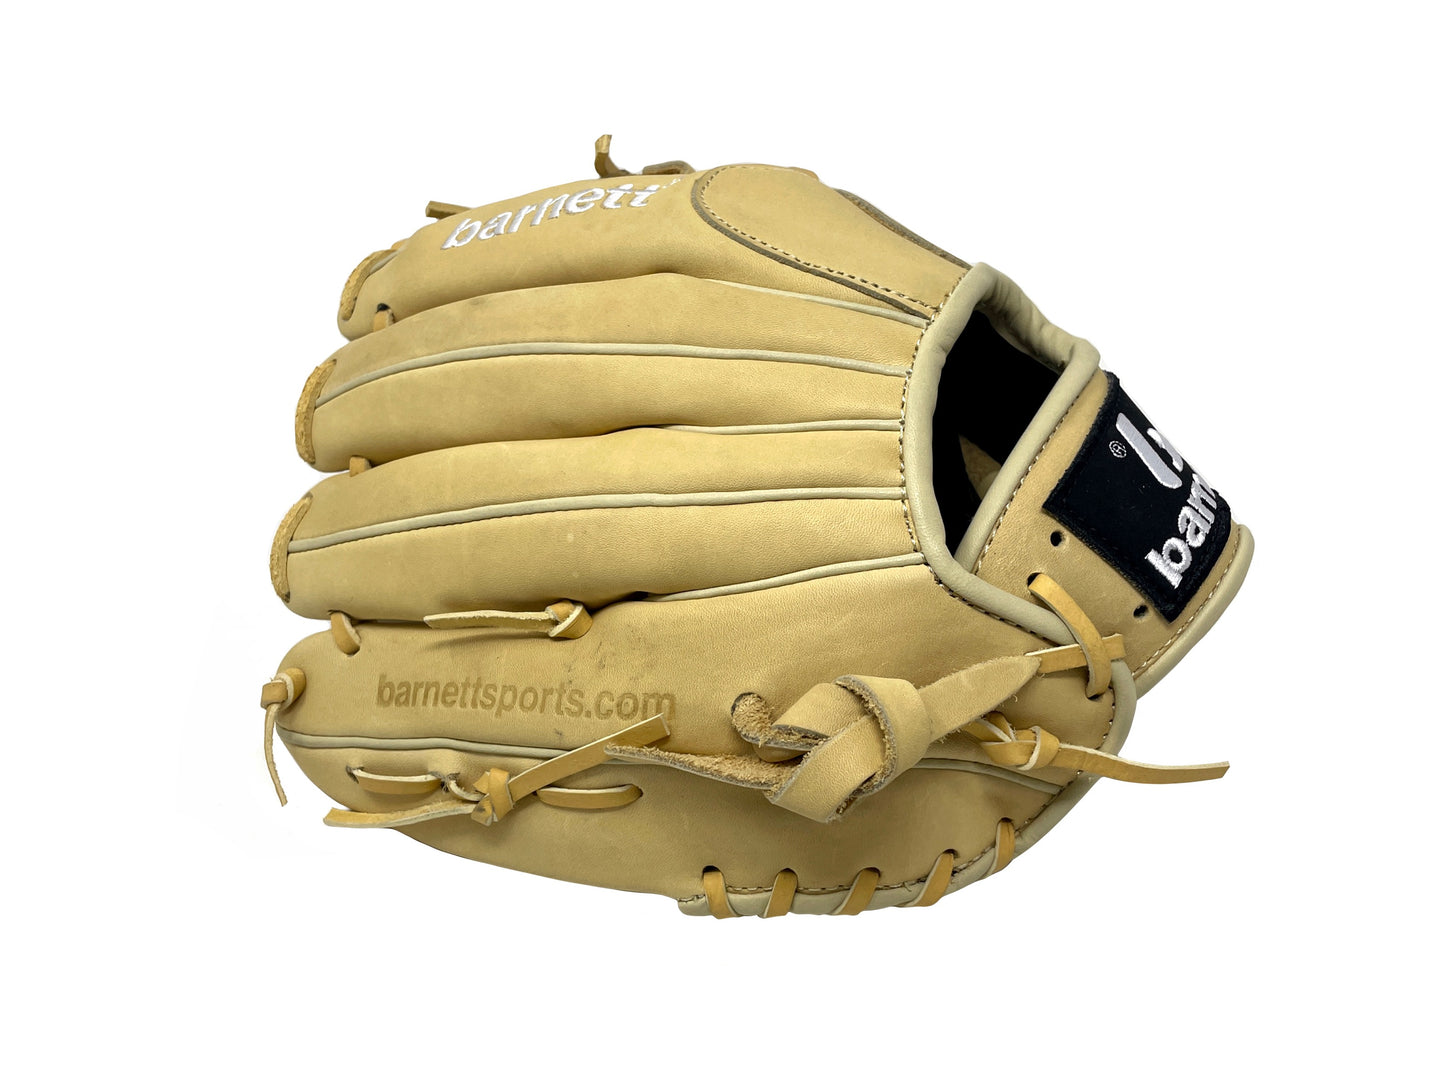 FL-115 gant de baseball cuir haute qualité infield/outfield 11, beige